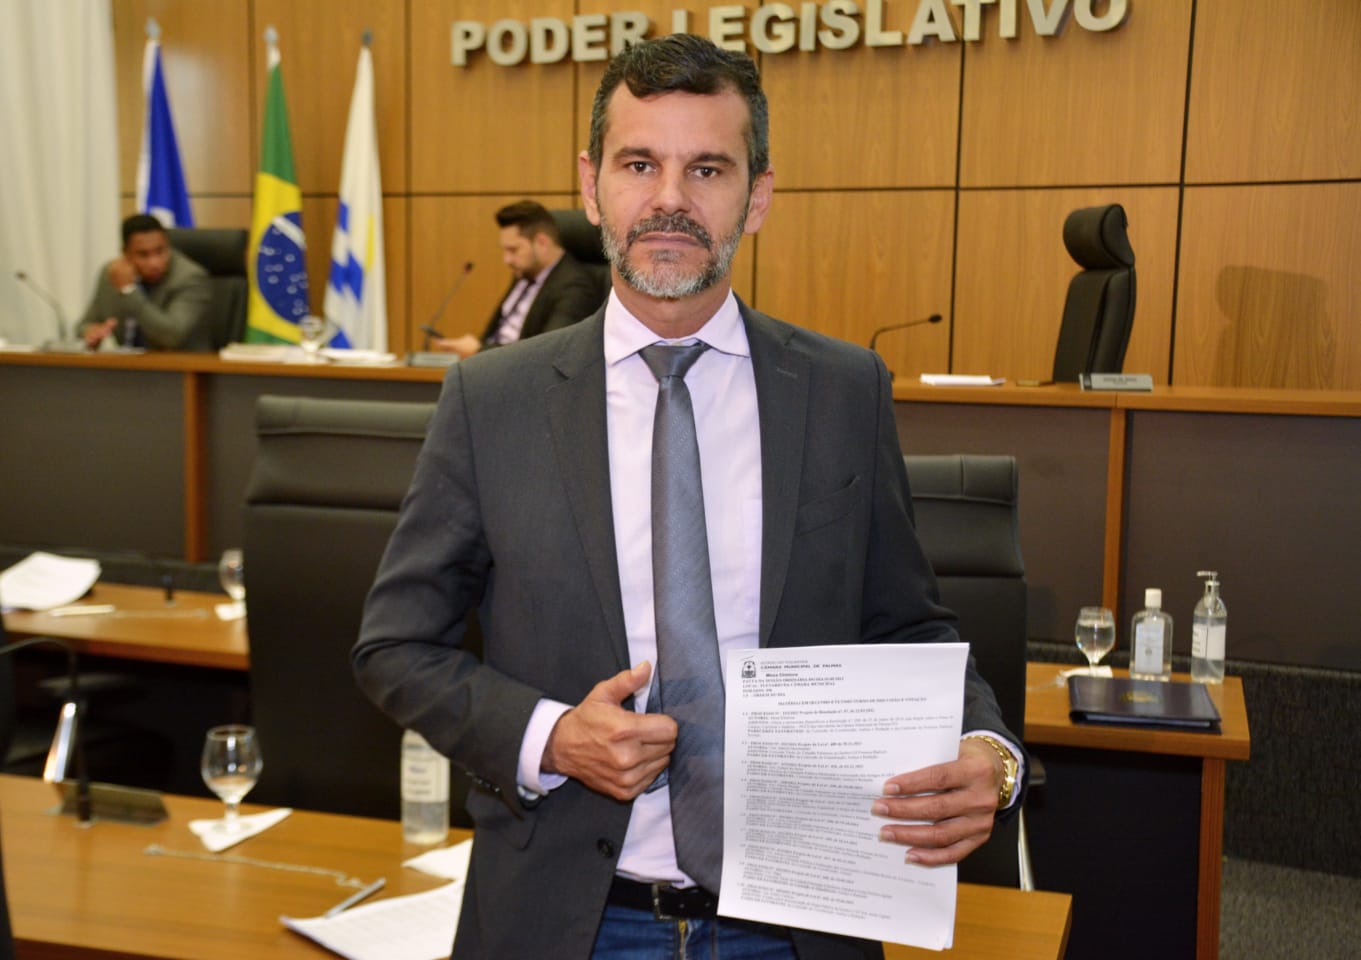 Vereador Mauro Lacerda solicita à gestão a implantação de uma unidade de saúde e a construção de uma praça pública no Setor Sônia Regina